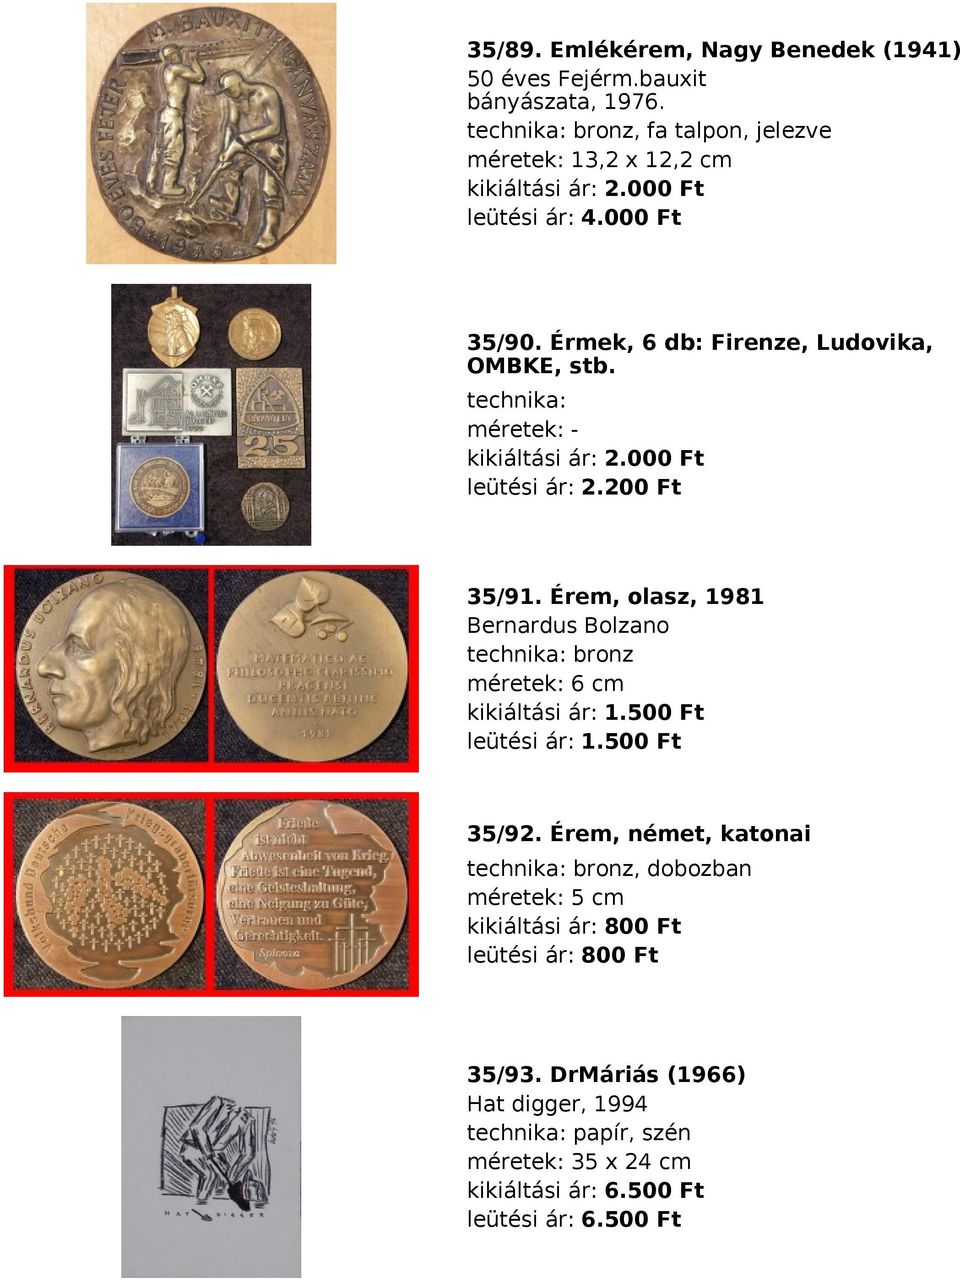 Érem, olasz, 1981 Bernardus Bolzano technika: bronz méretek: 6 cm kikiáltási ár: 1.500 Ft leütési ár: 1.500 Ft 35/92.